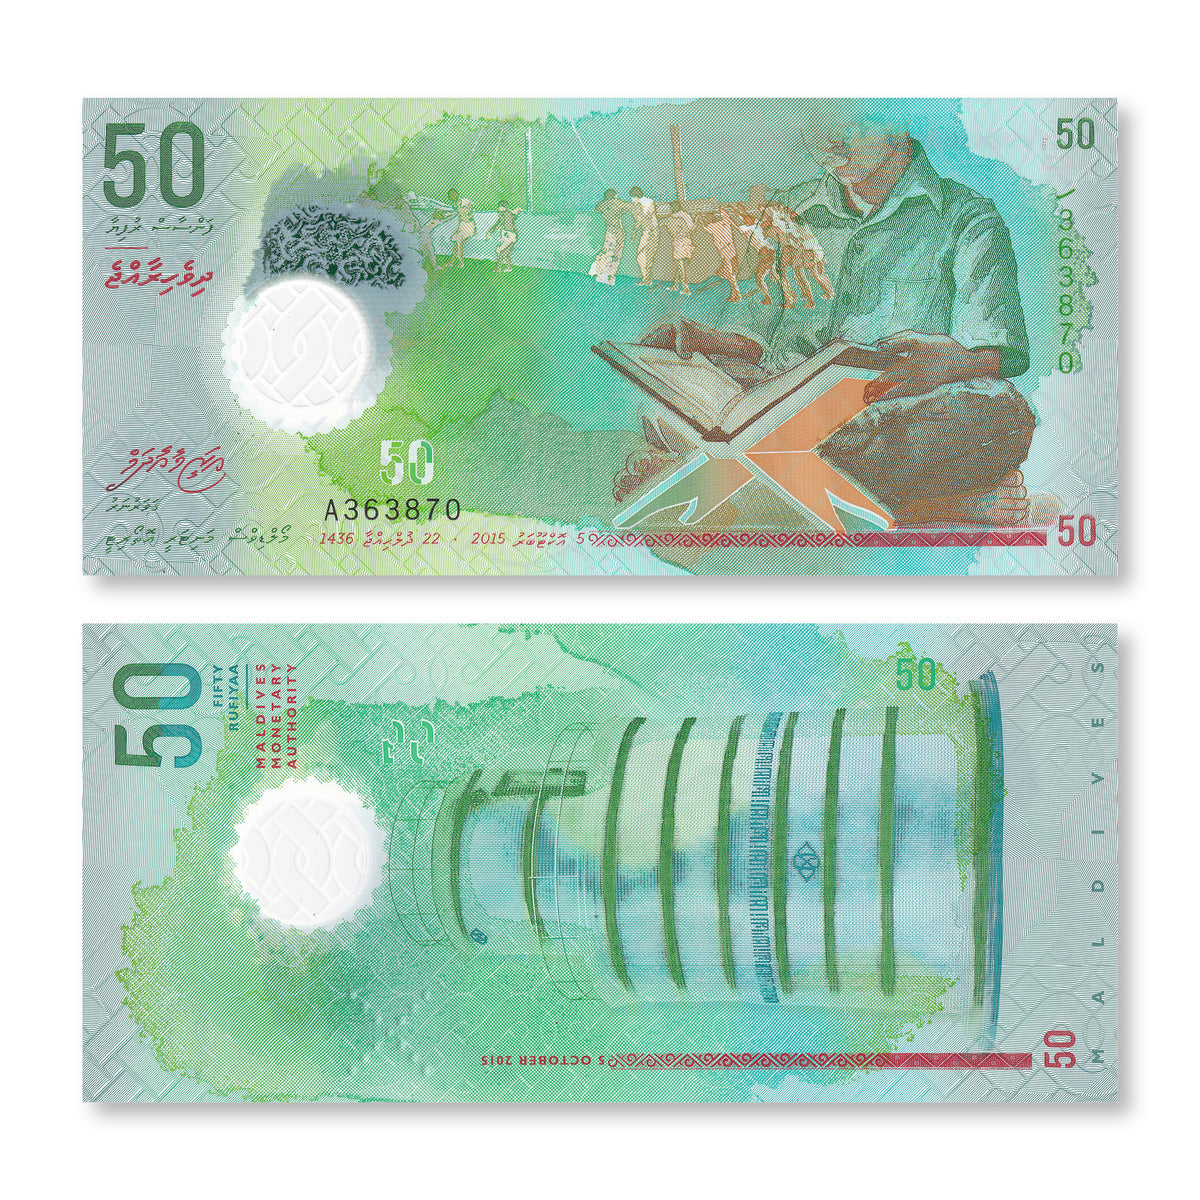 Maldives 50 Rufiyaa, 2015, B218a, P28, UNC - Robert's World Money - World Banknotes